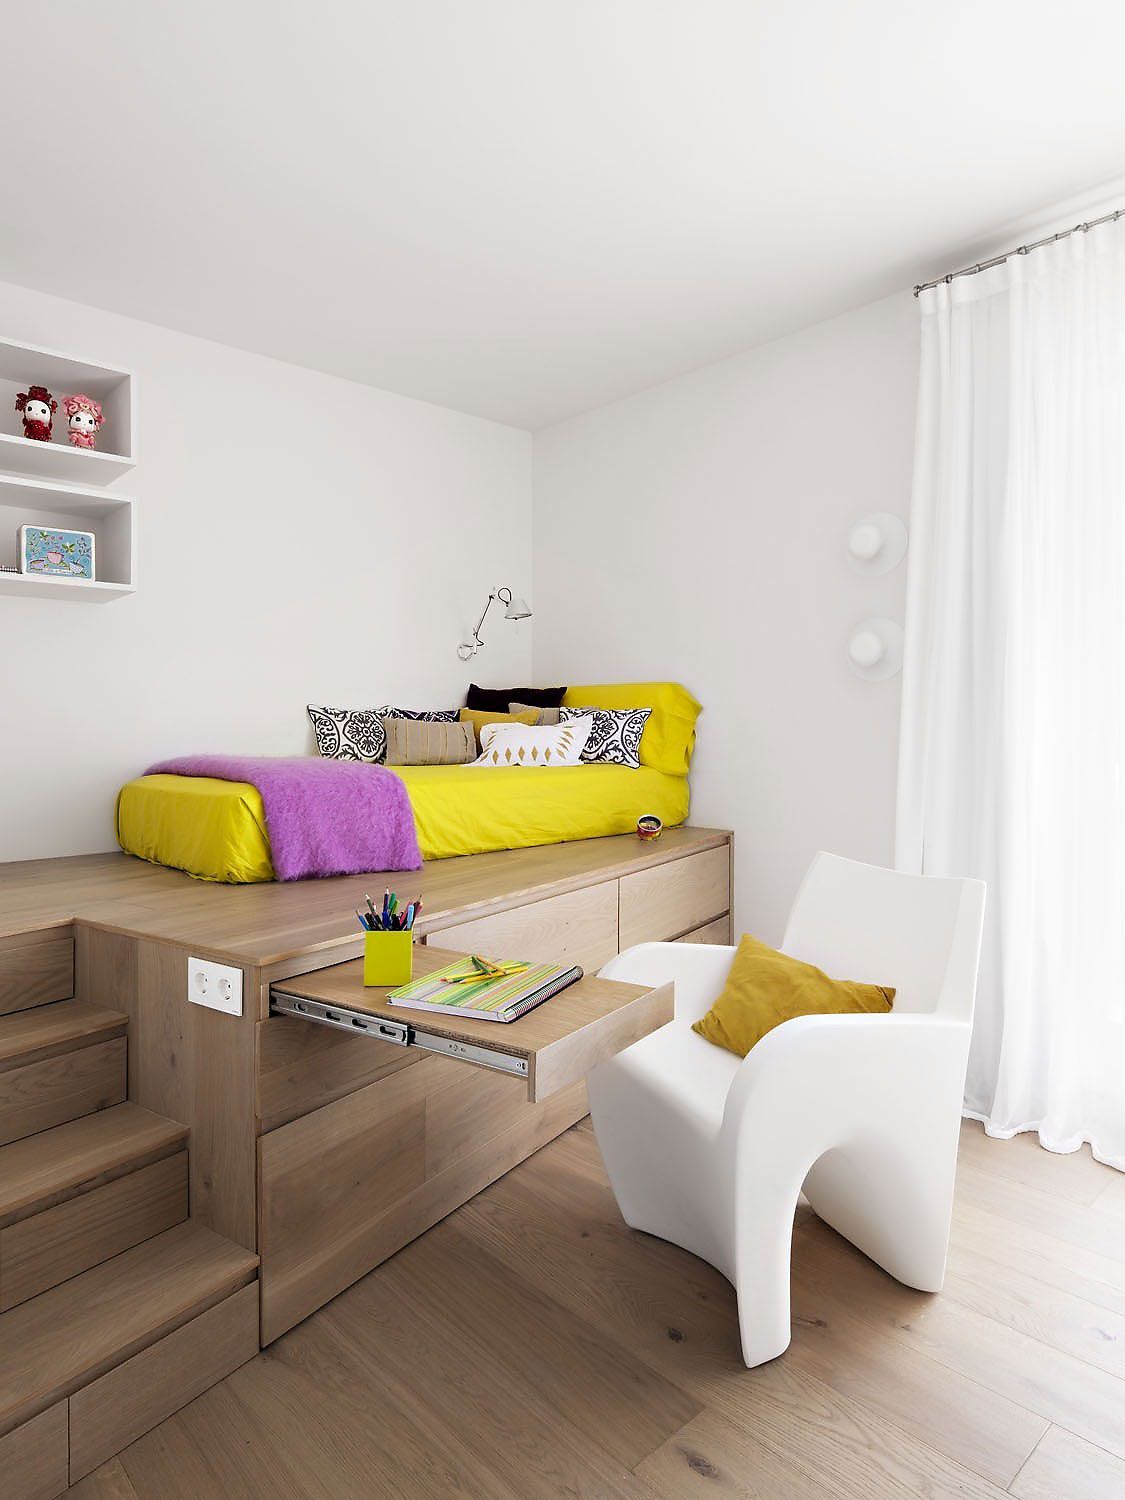 loft bed / storage – kids room or guest room?